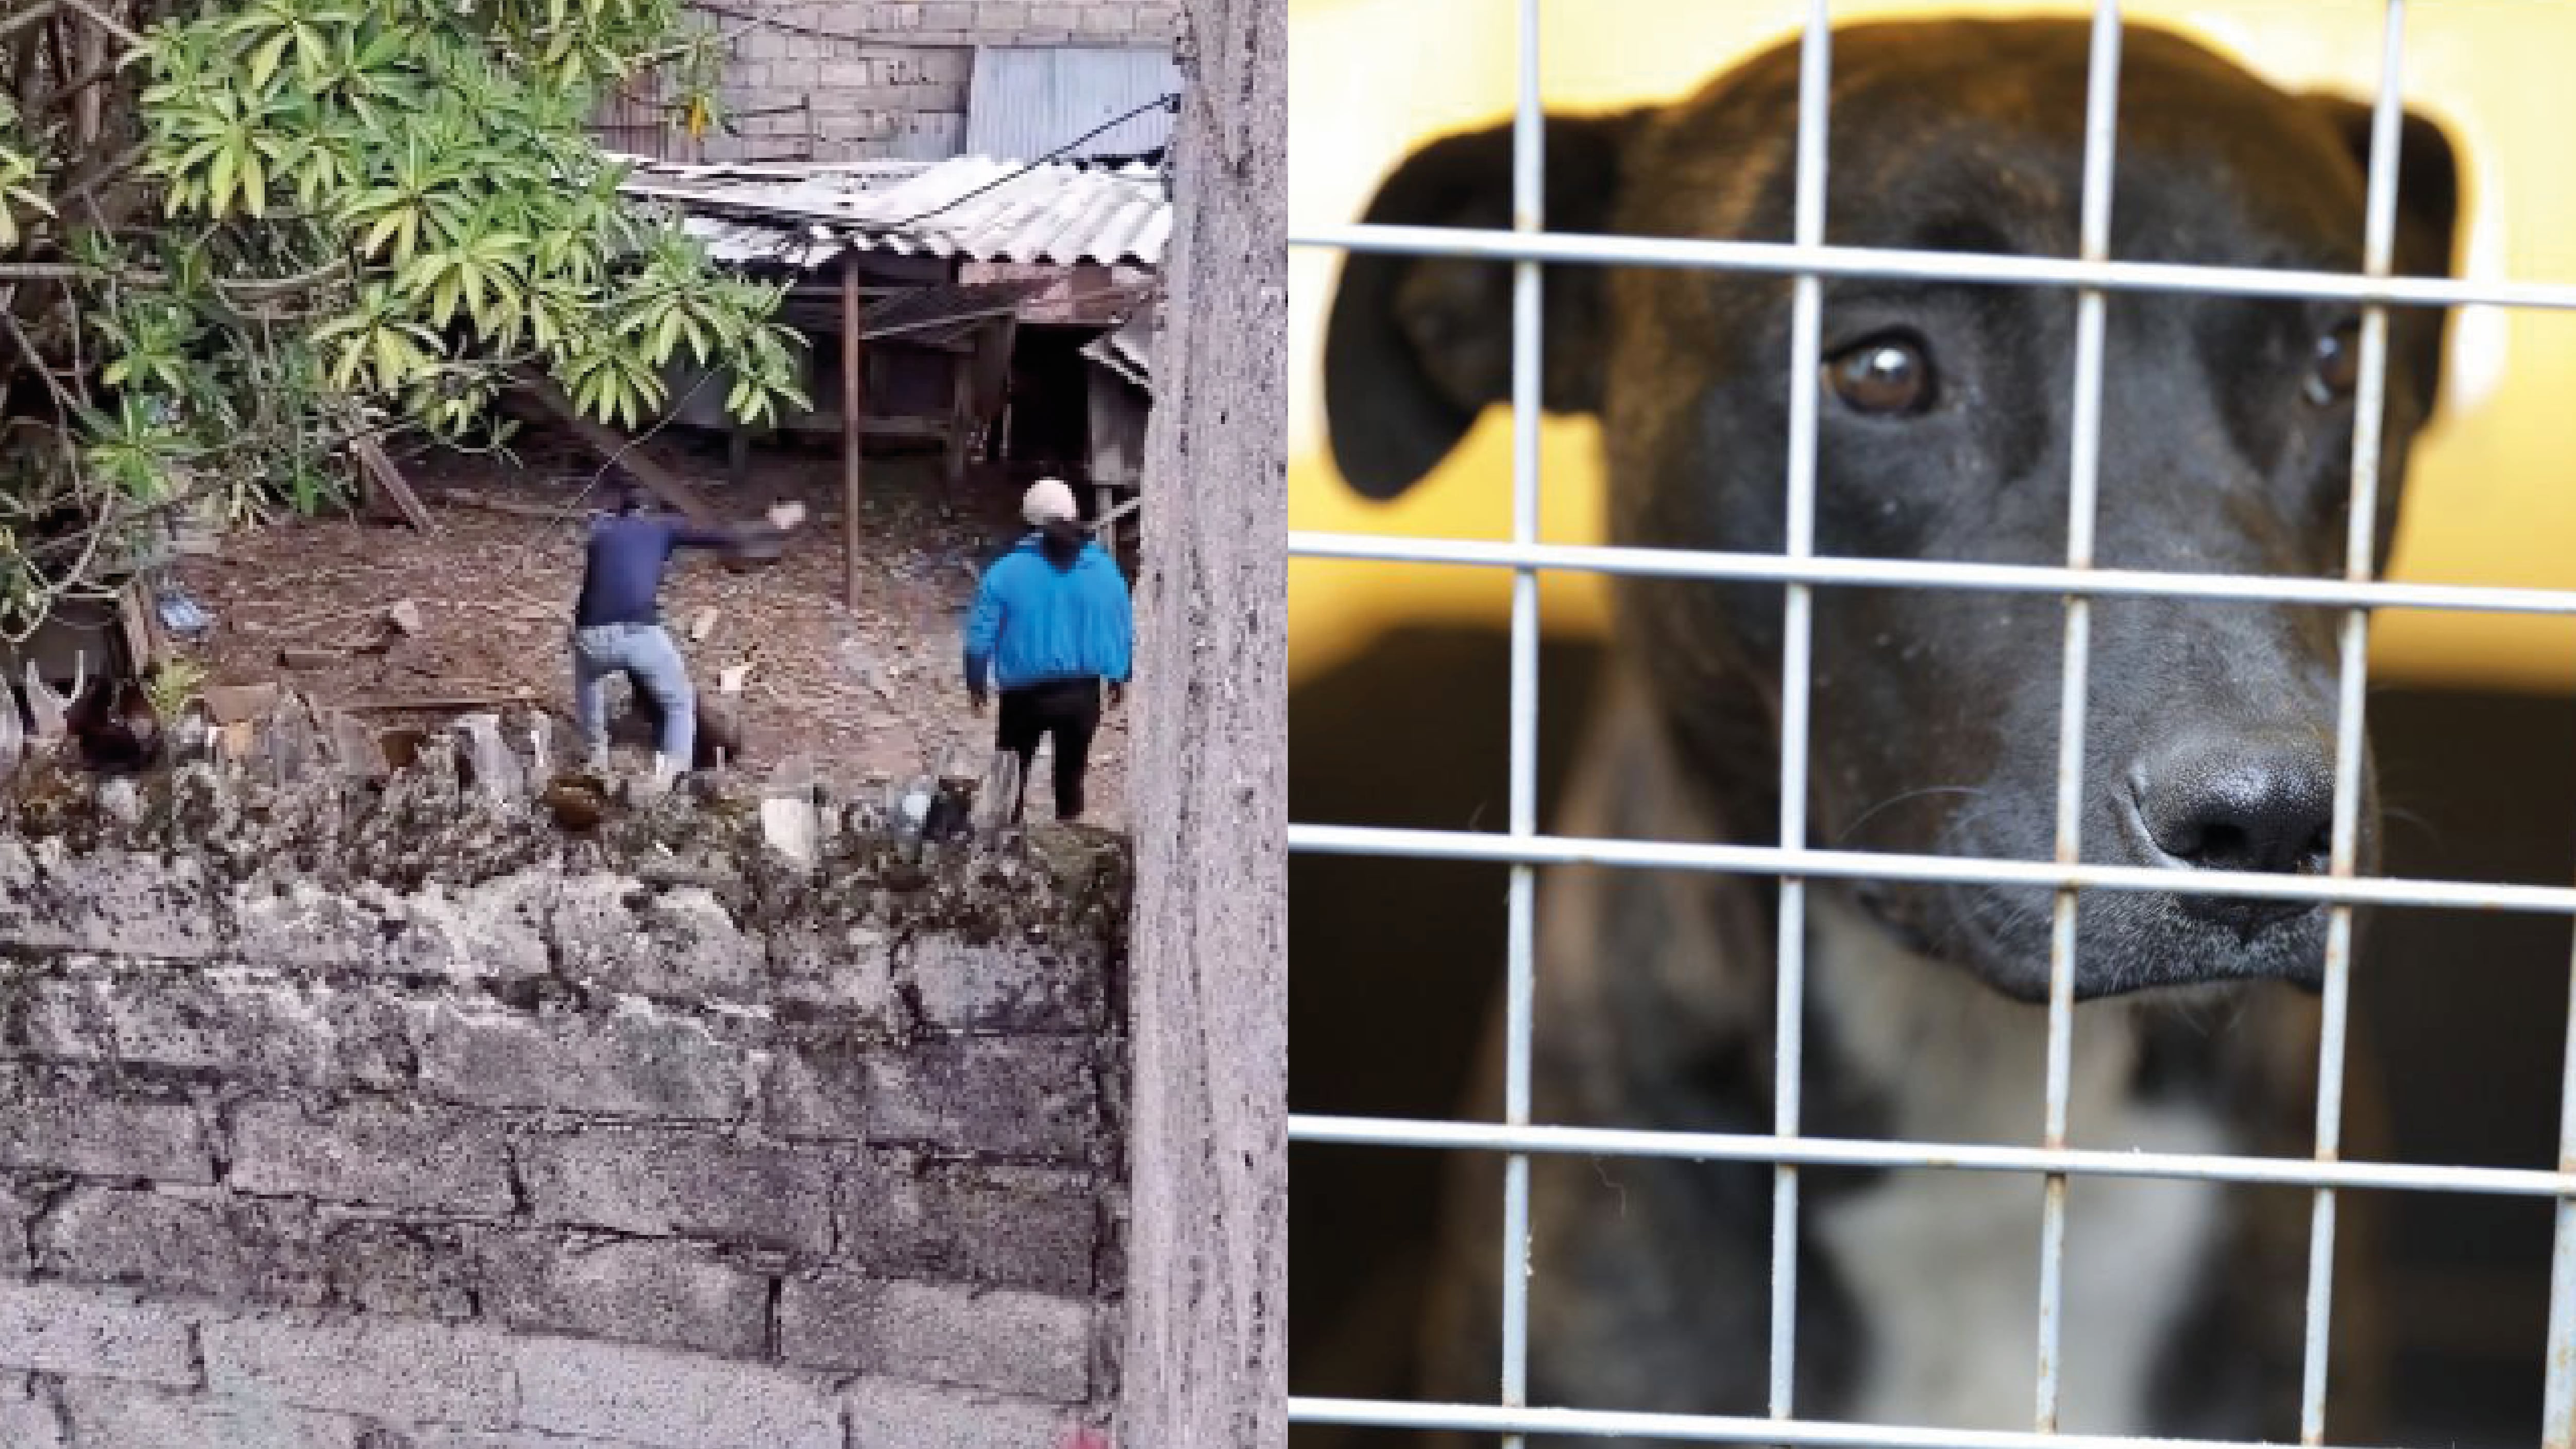 Maltrato animal en Quito: Rescataron a Sargento, perrito que fue brutalmente golpeado en Guamaní